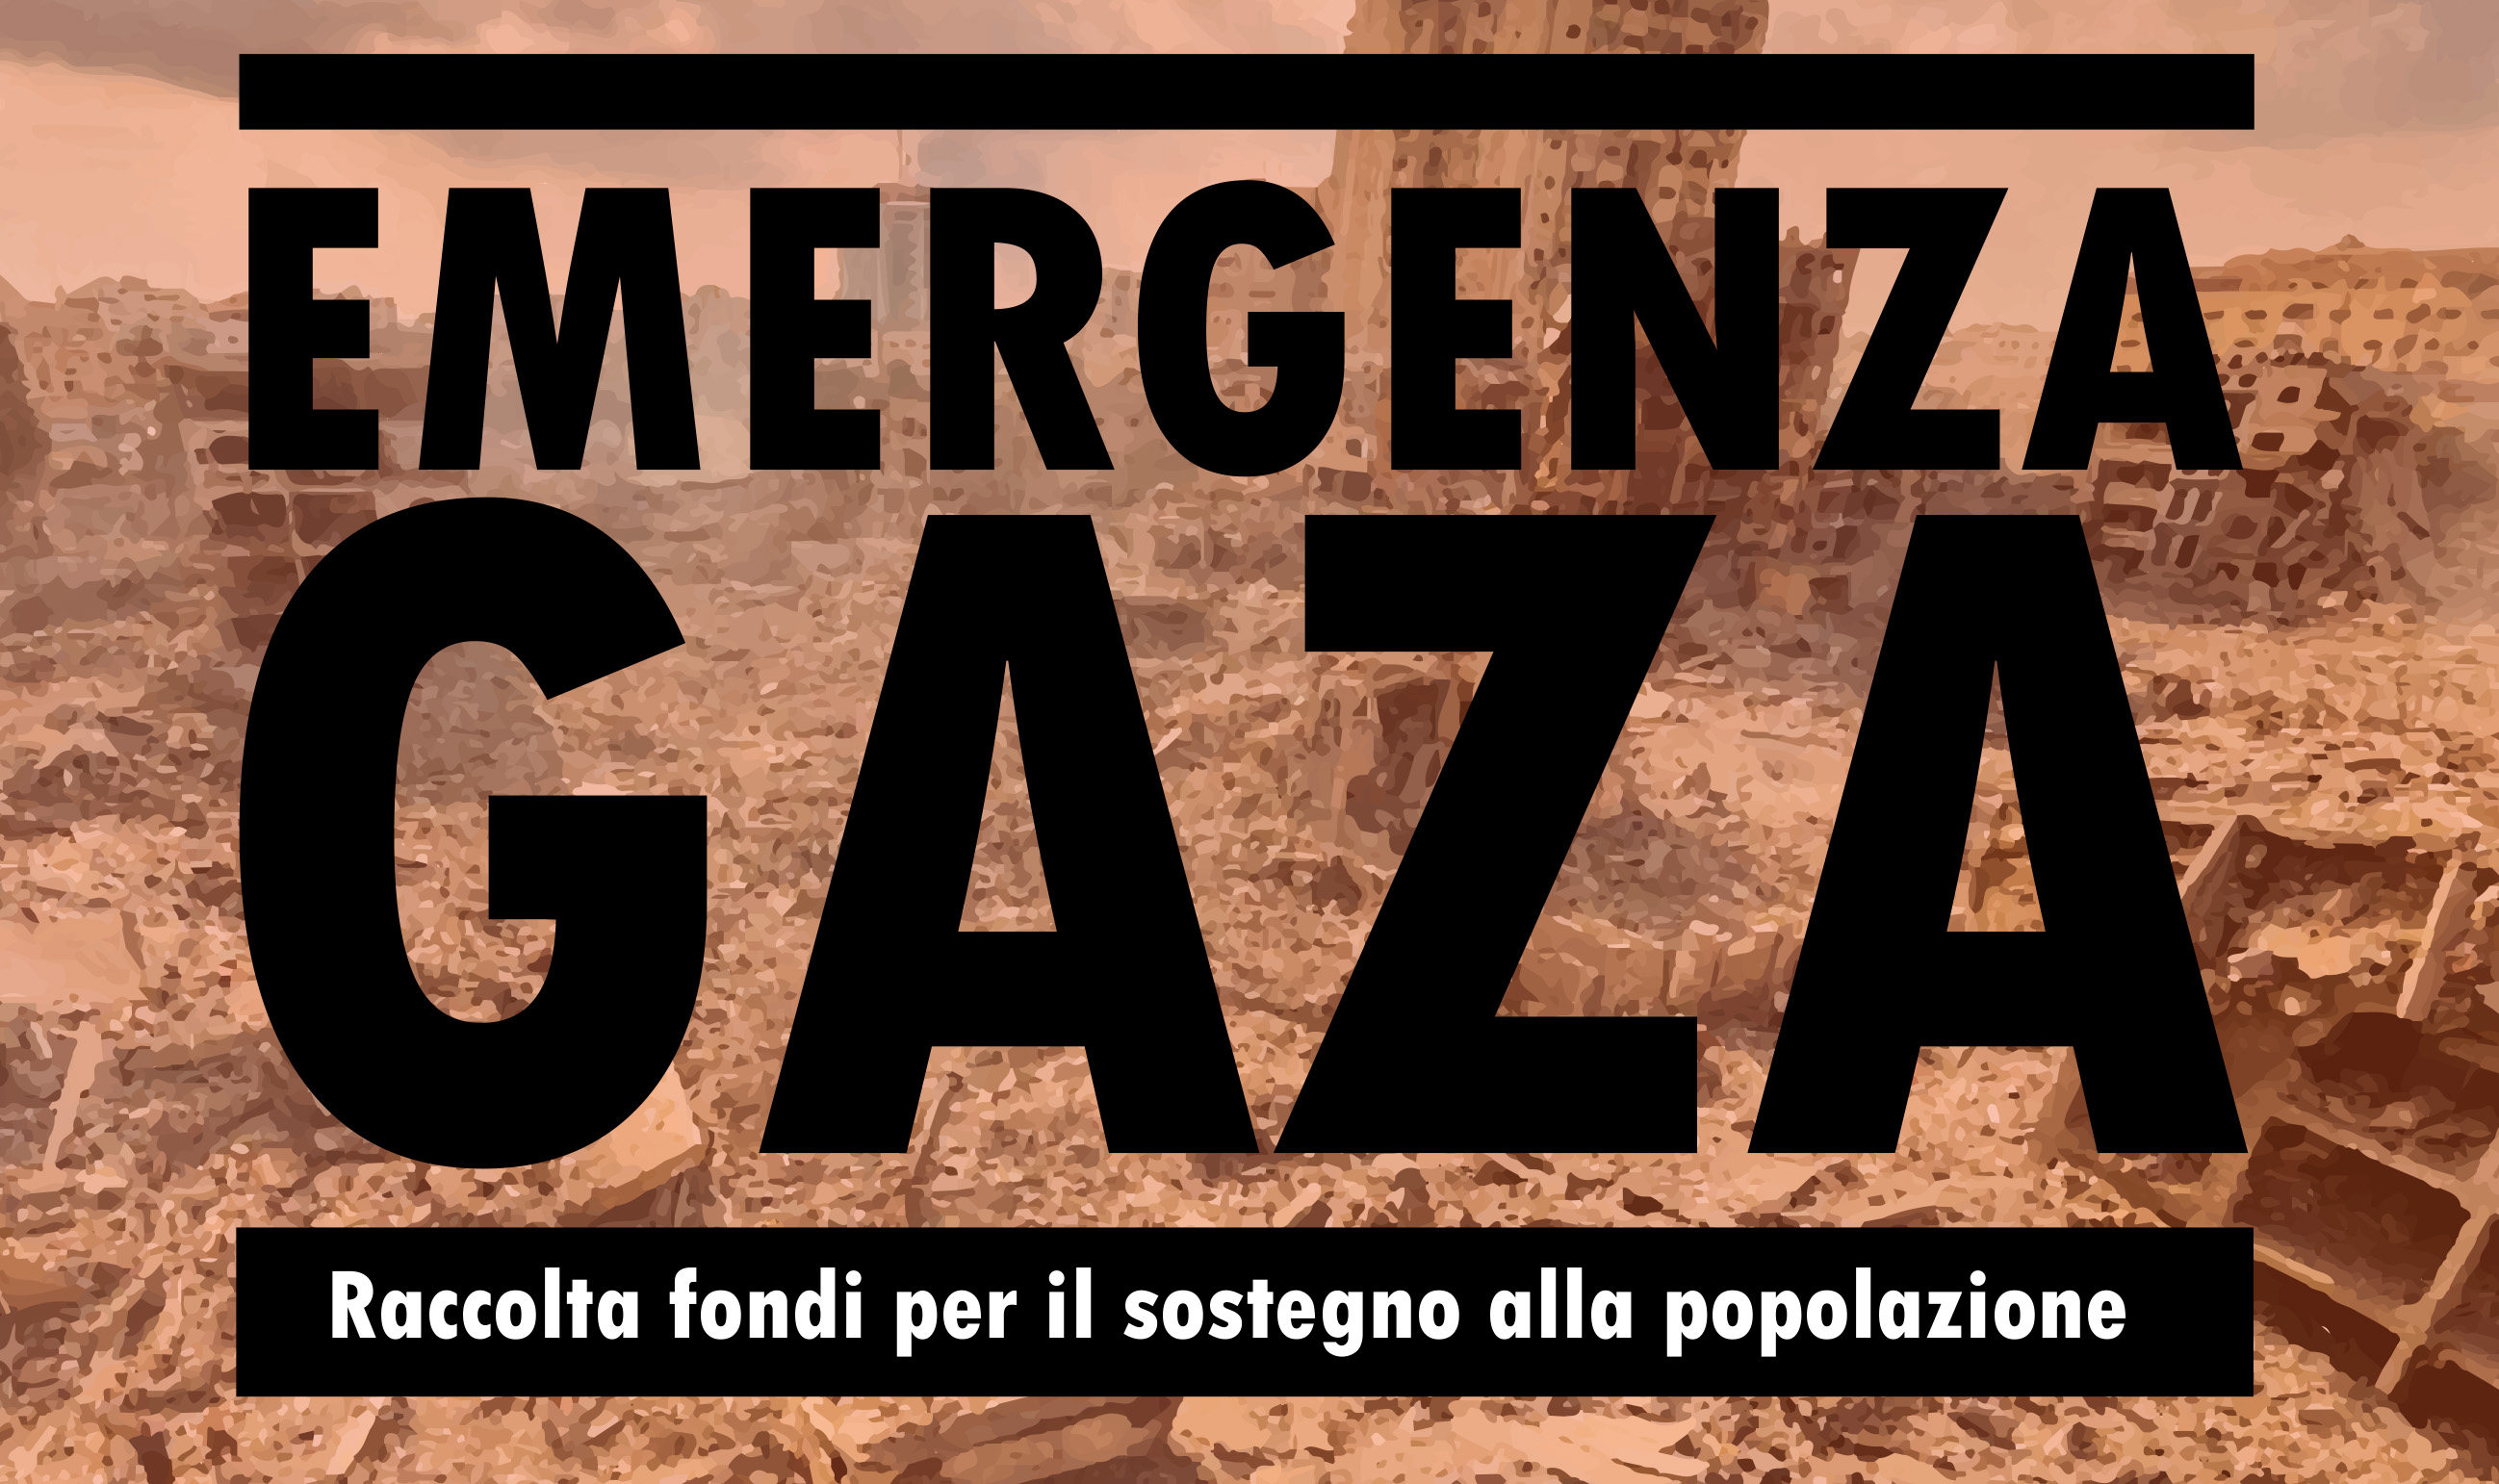 EMERGENZA GAZA - Raccolta fondi per il sostegno alla popolazione